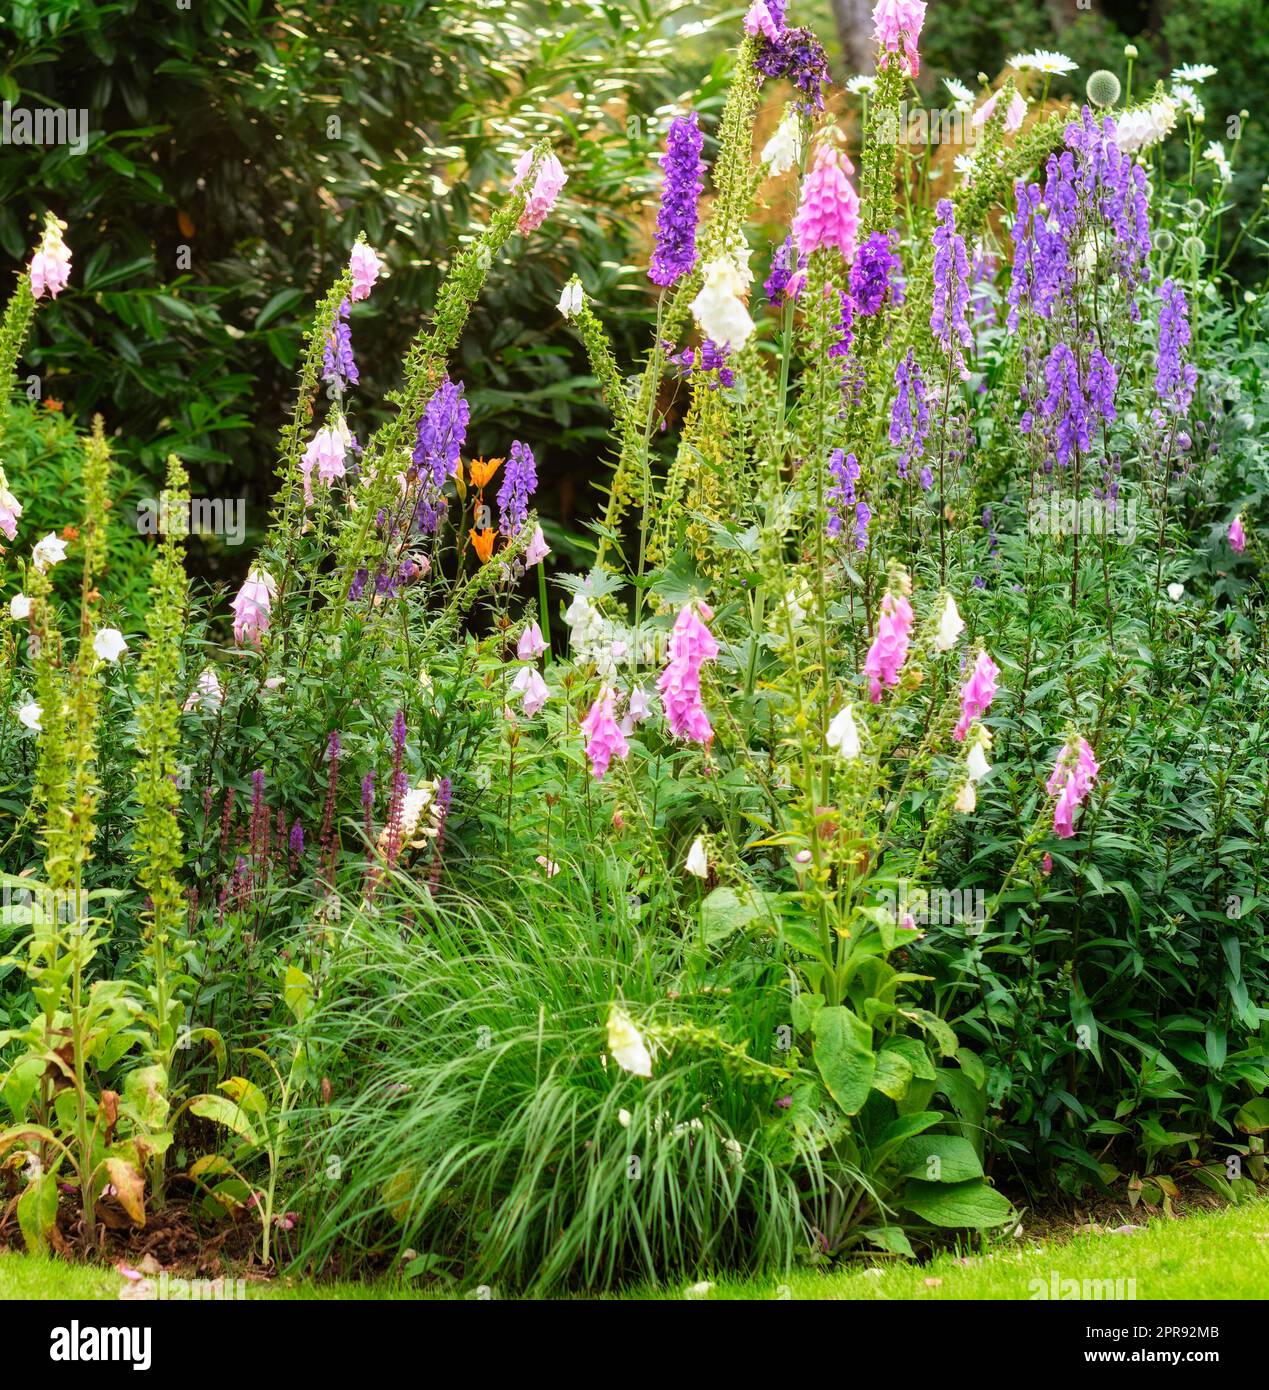 Giftblüten, Fuchshandschuhblumen oder Digitalis purpurea in einem bunten botanischen Garten mit Pflanzen und Bäumen an einem sonnigen Tag im Frühling. Wunderschöne Landschaft in friedlicher Umgebung im Hinterhof. Stockfoto